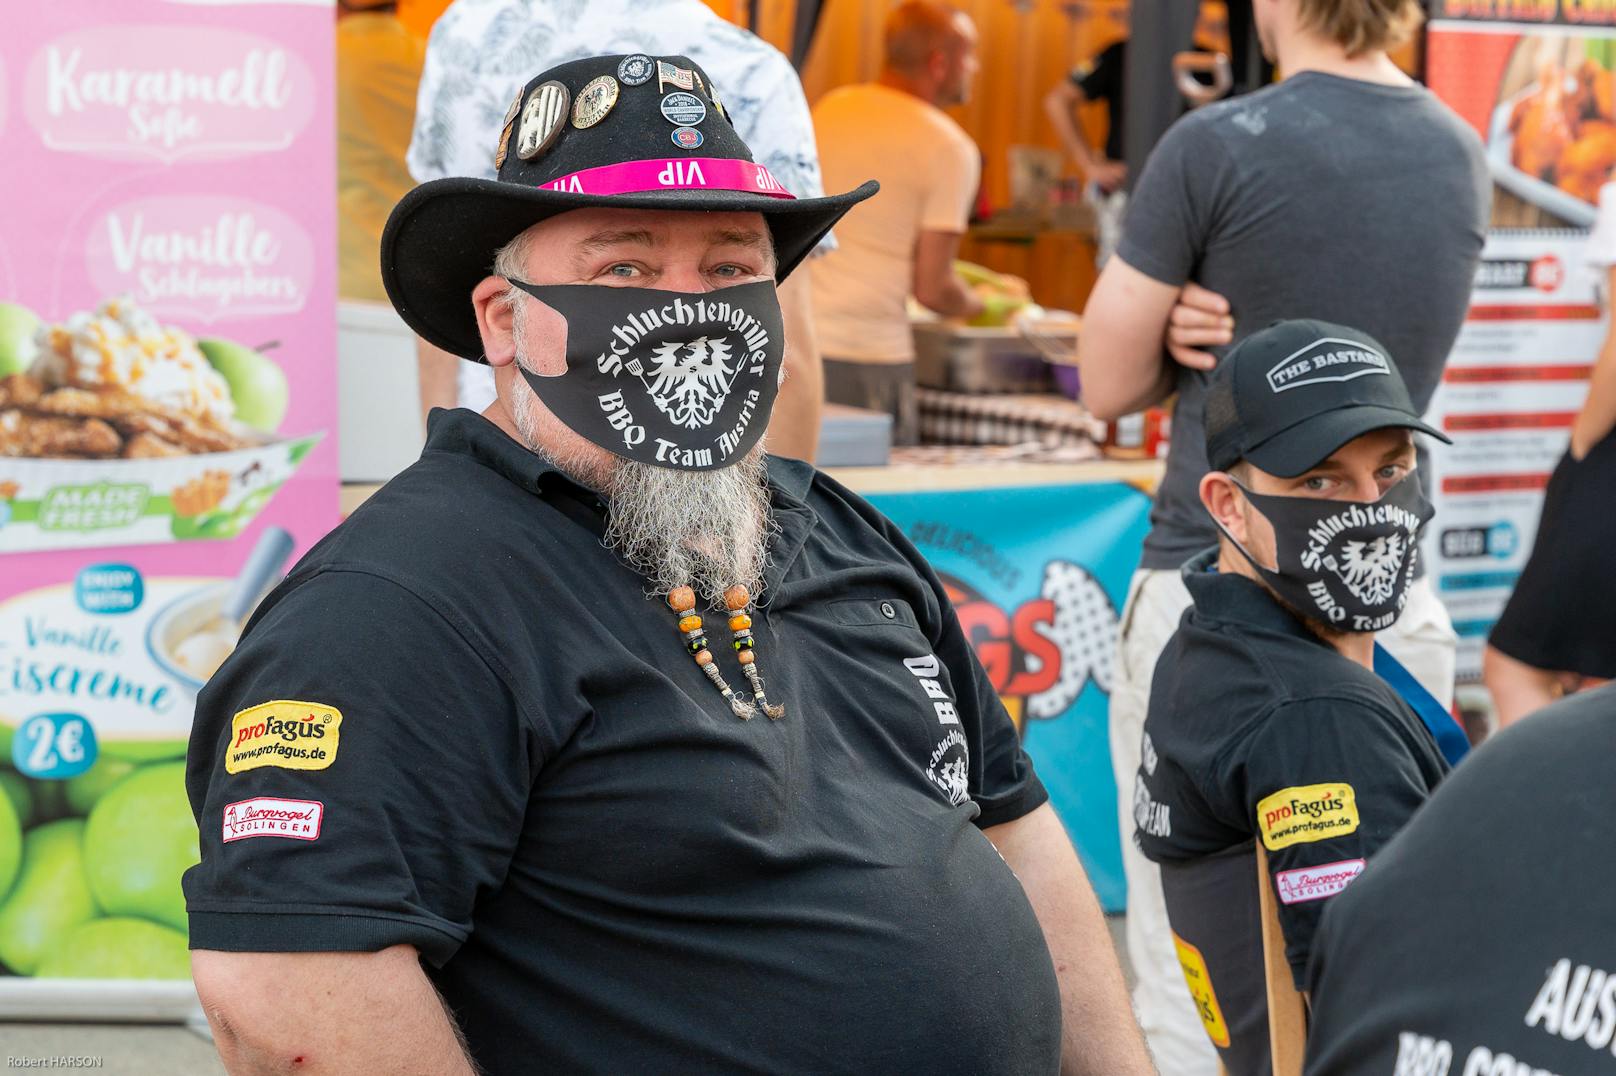 Teilnehmer der Grillwettbewerbe - selbstverständlich mit Masken unterwegs